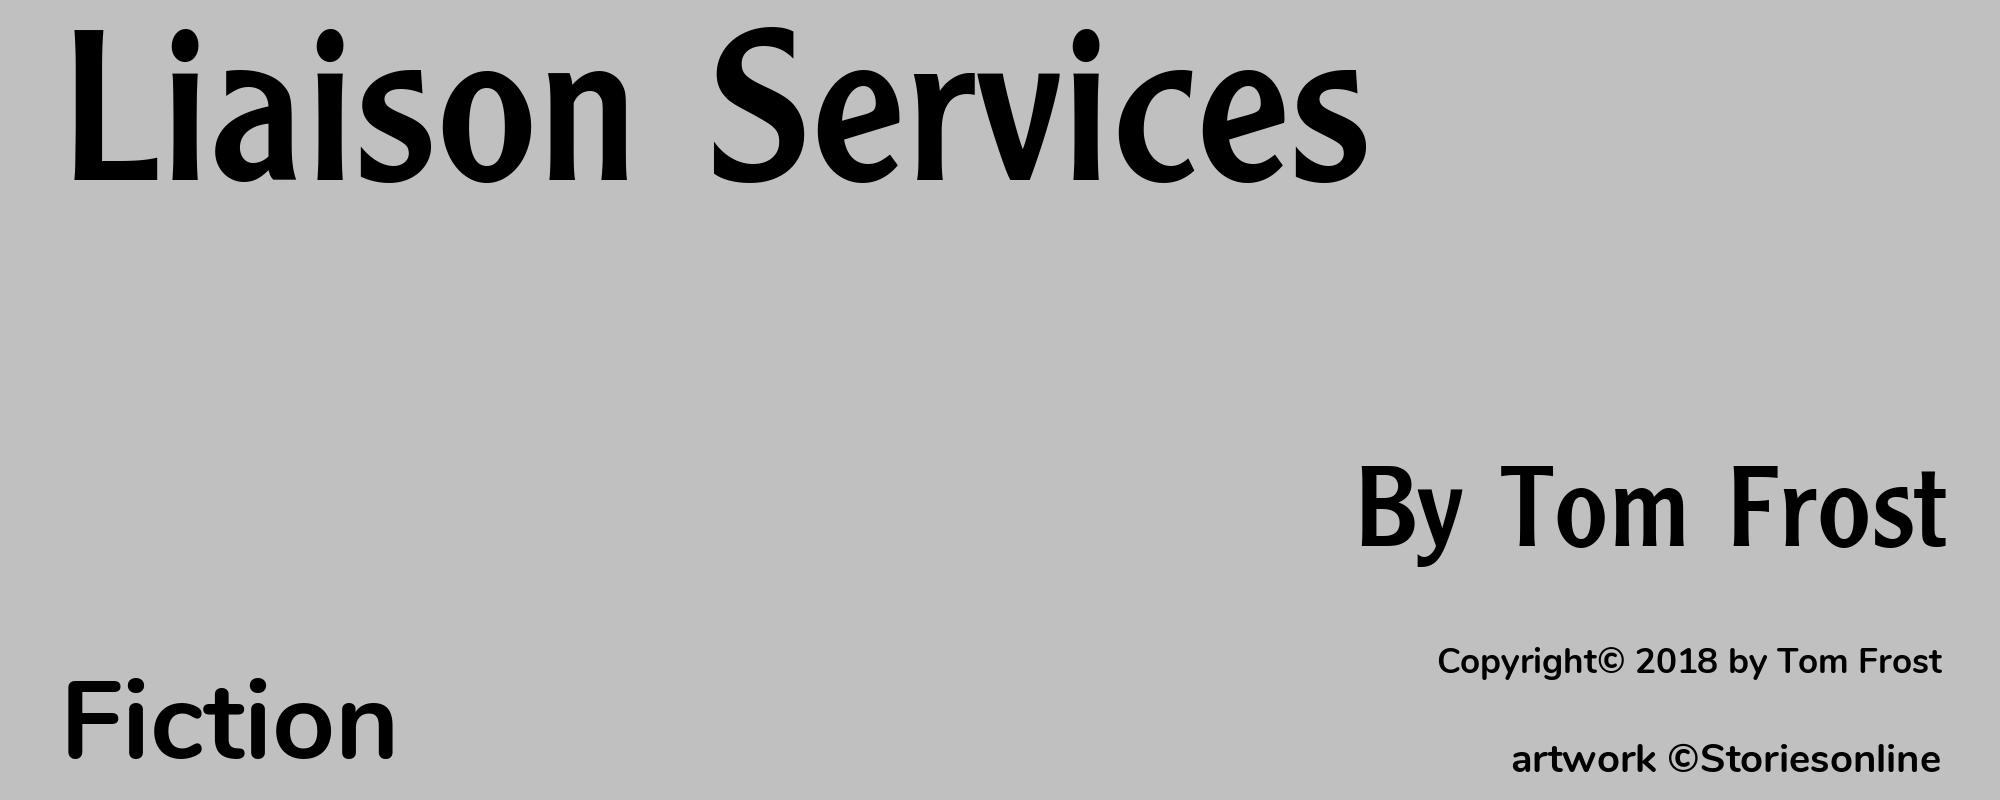 Liaison Services - Cover